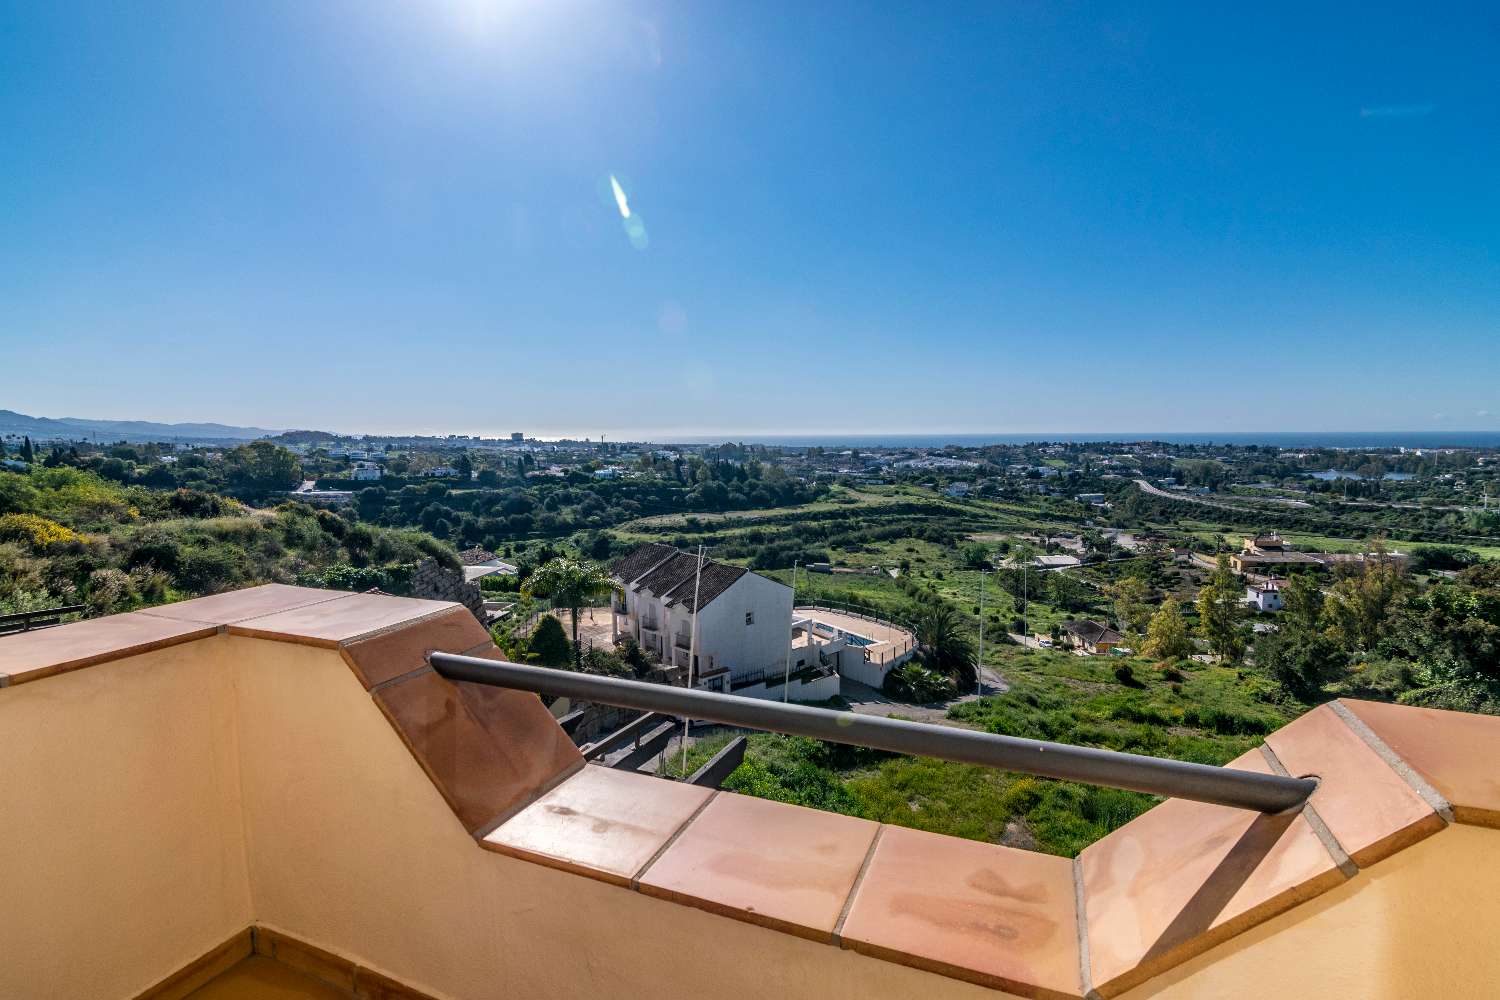 Vakker duplex penthouse i Benahavís vendt sørover med fantastisk utsikt over Middelhavet